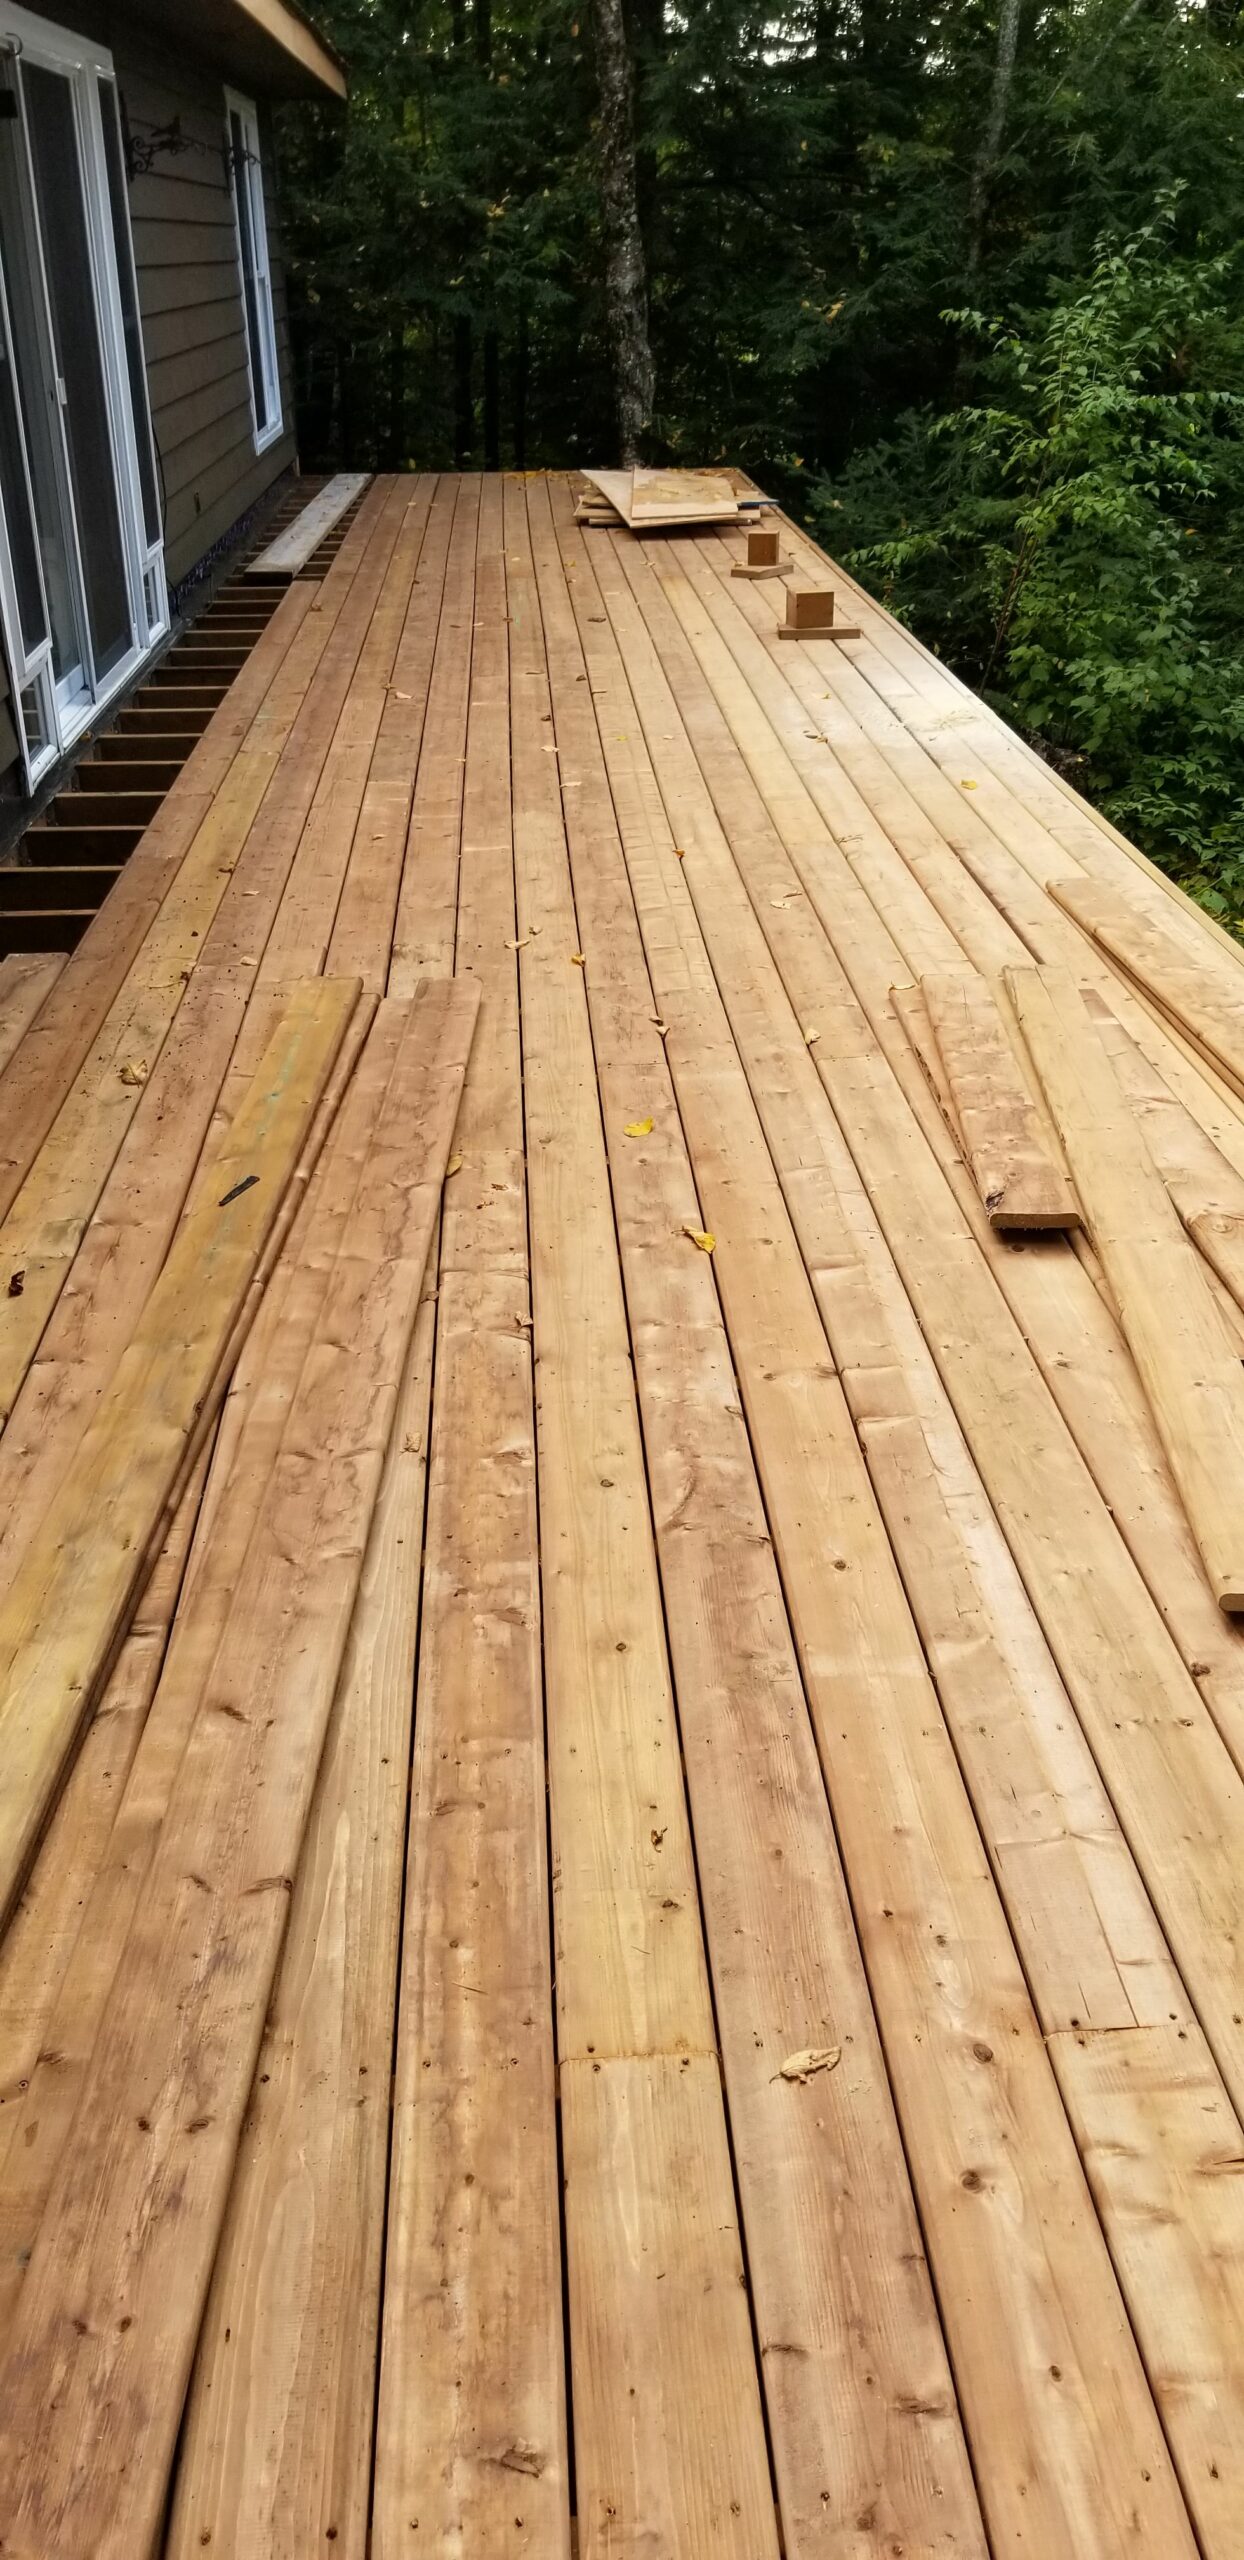 New deck installation